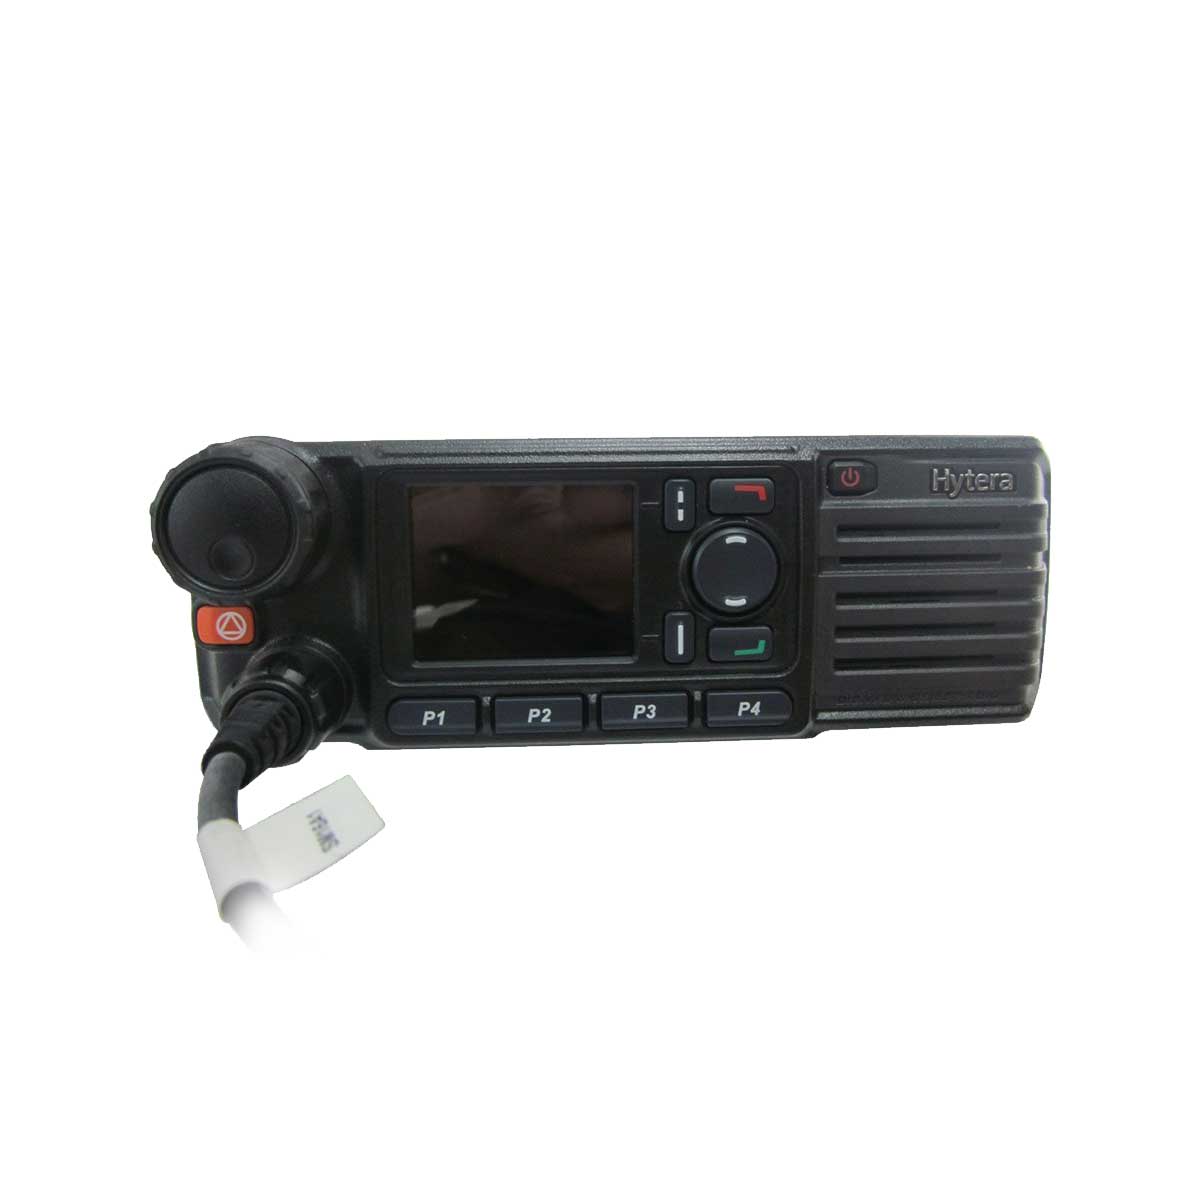 Radio Hytera MD786G Digital MD786G-U2 UHF 450-520 MHZ de 45W